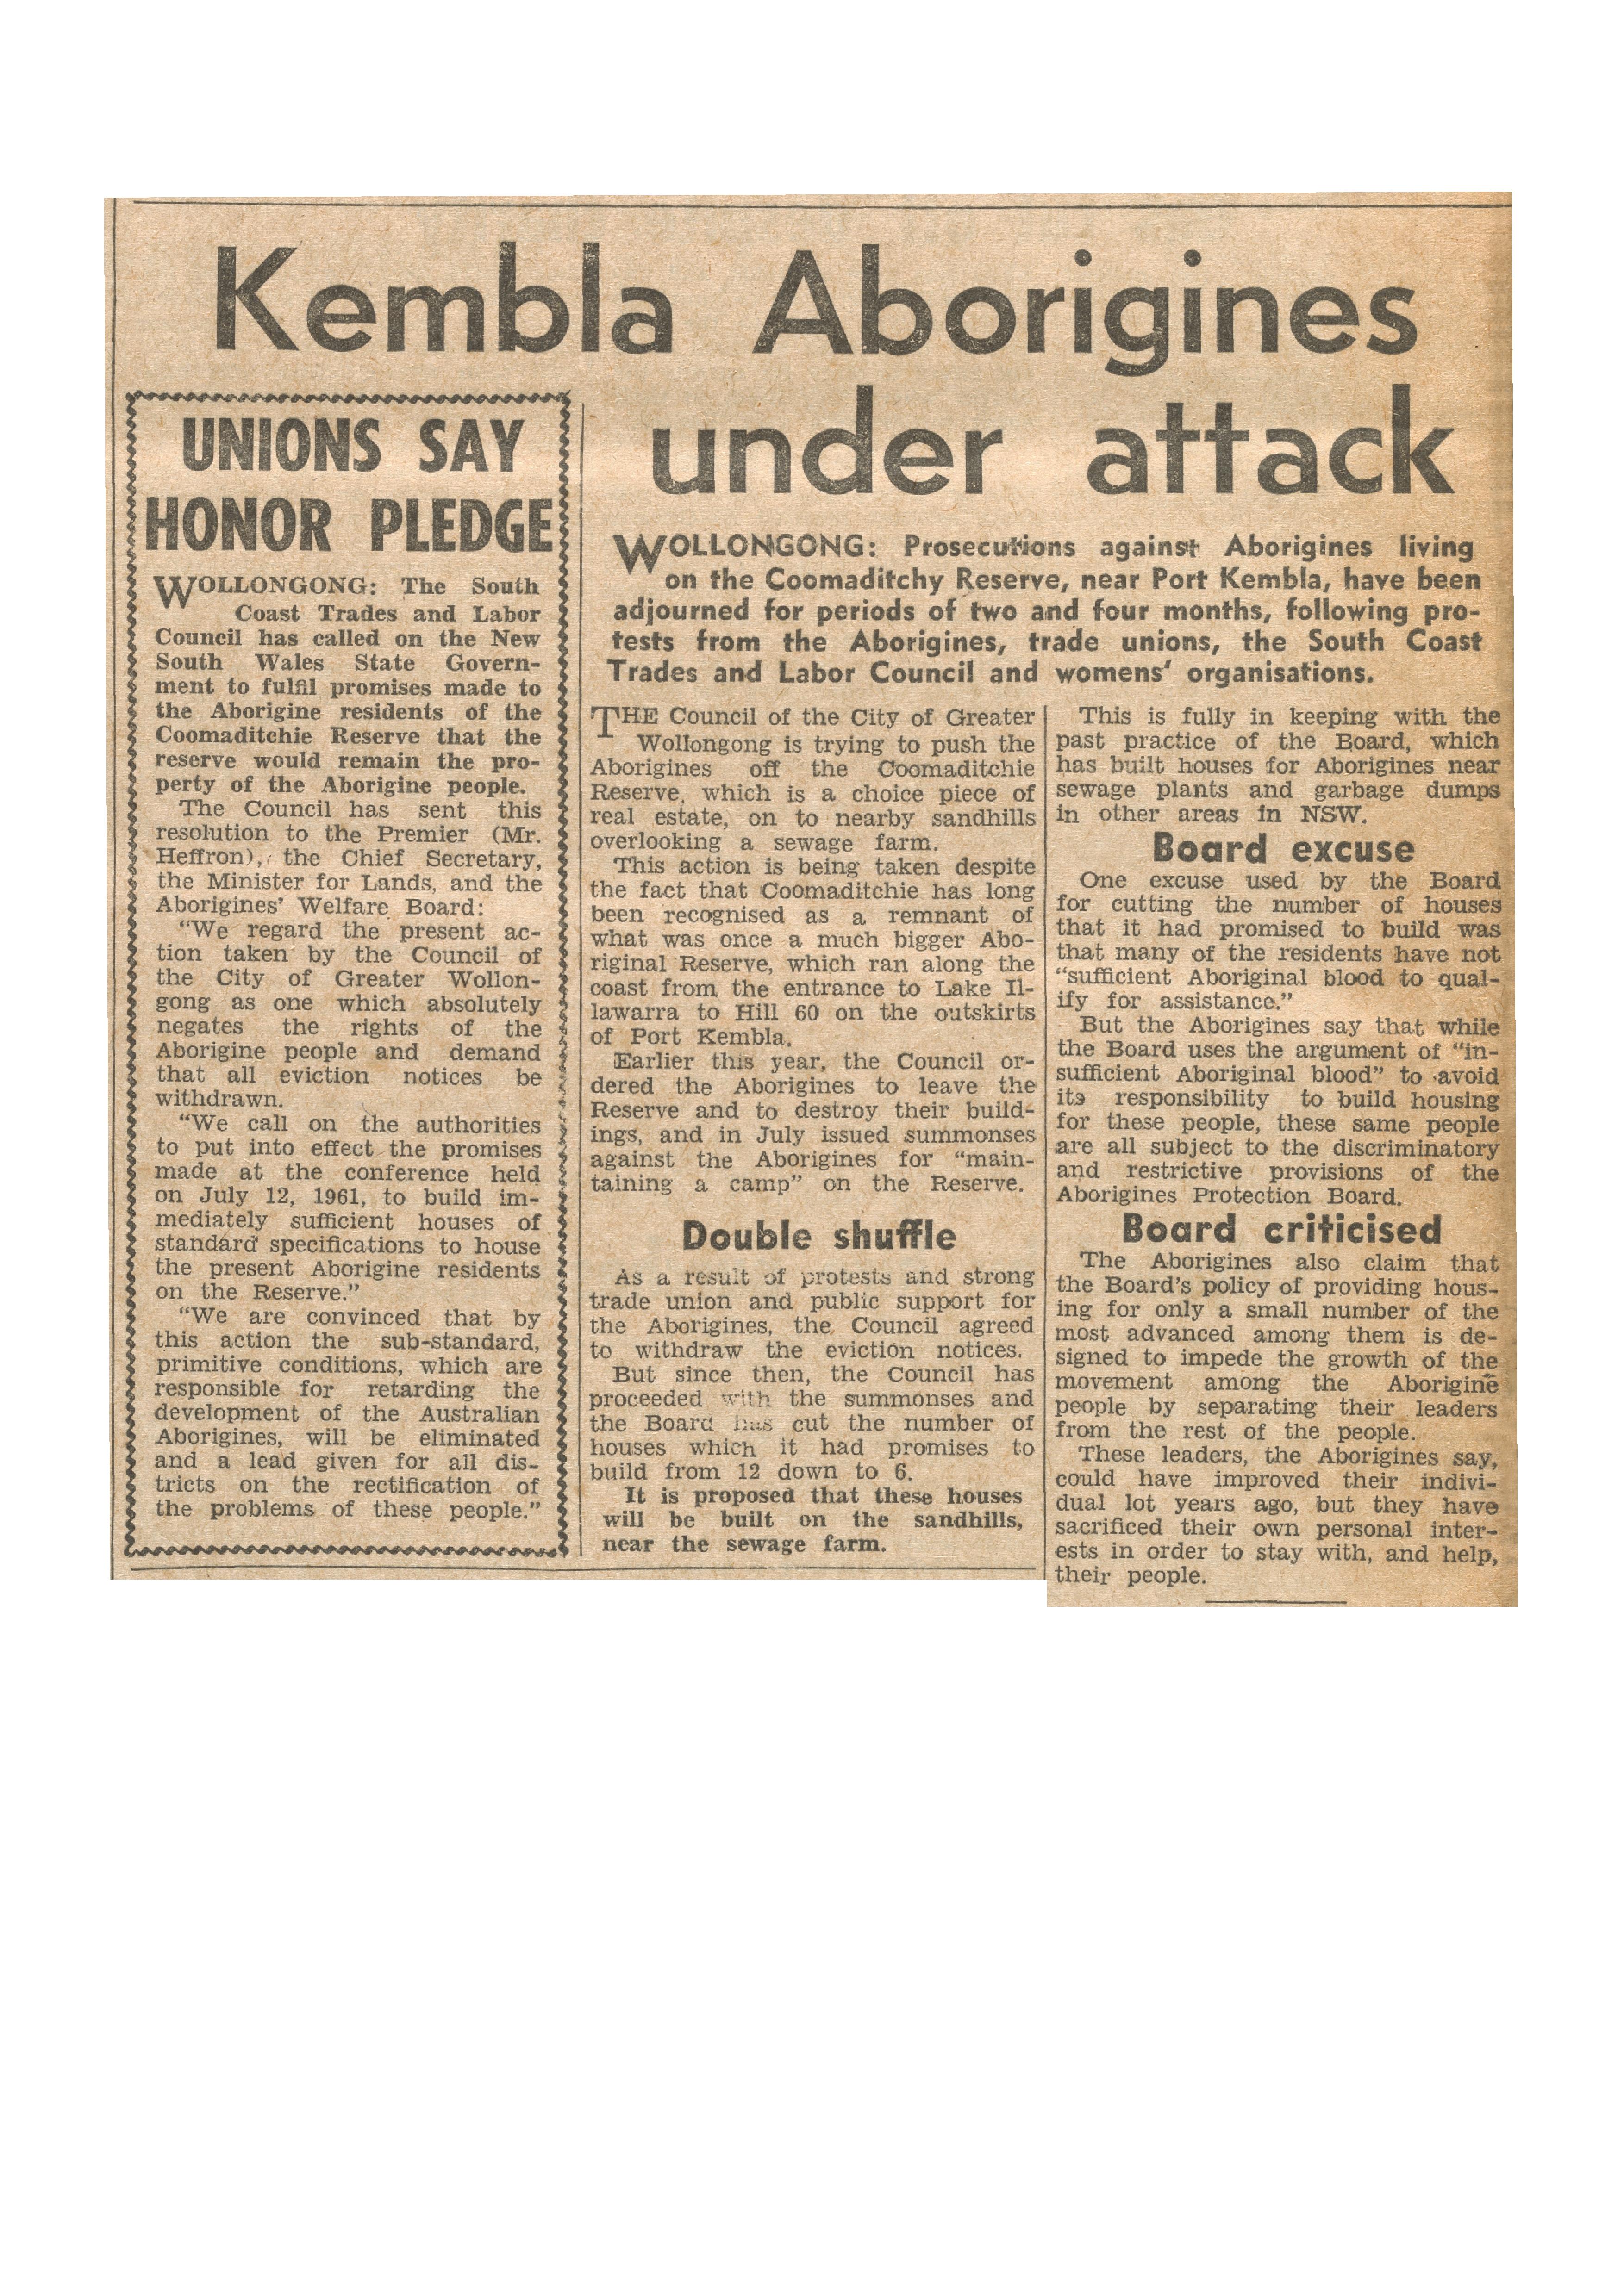 ‘Kembla Aborigines under attack’, The Tribune, 20 December 1961, p10 © Tribune/SEARCH Foundation